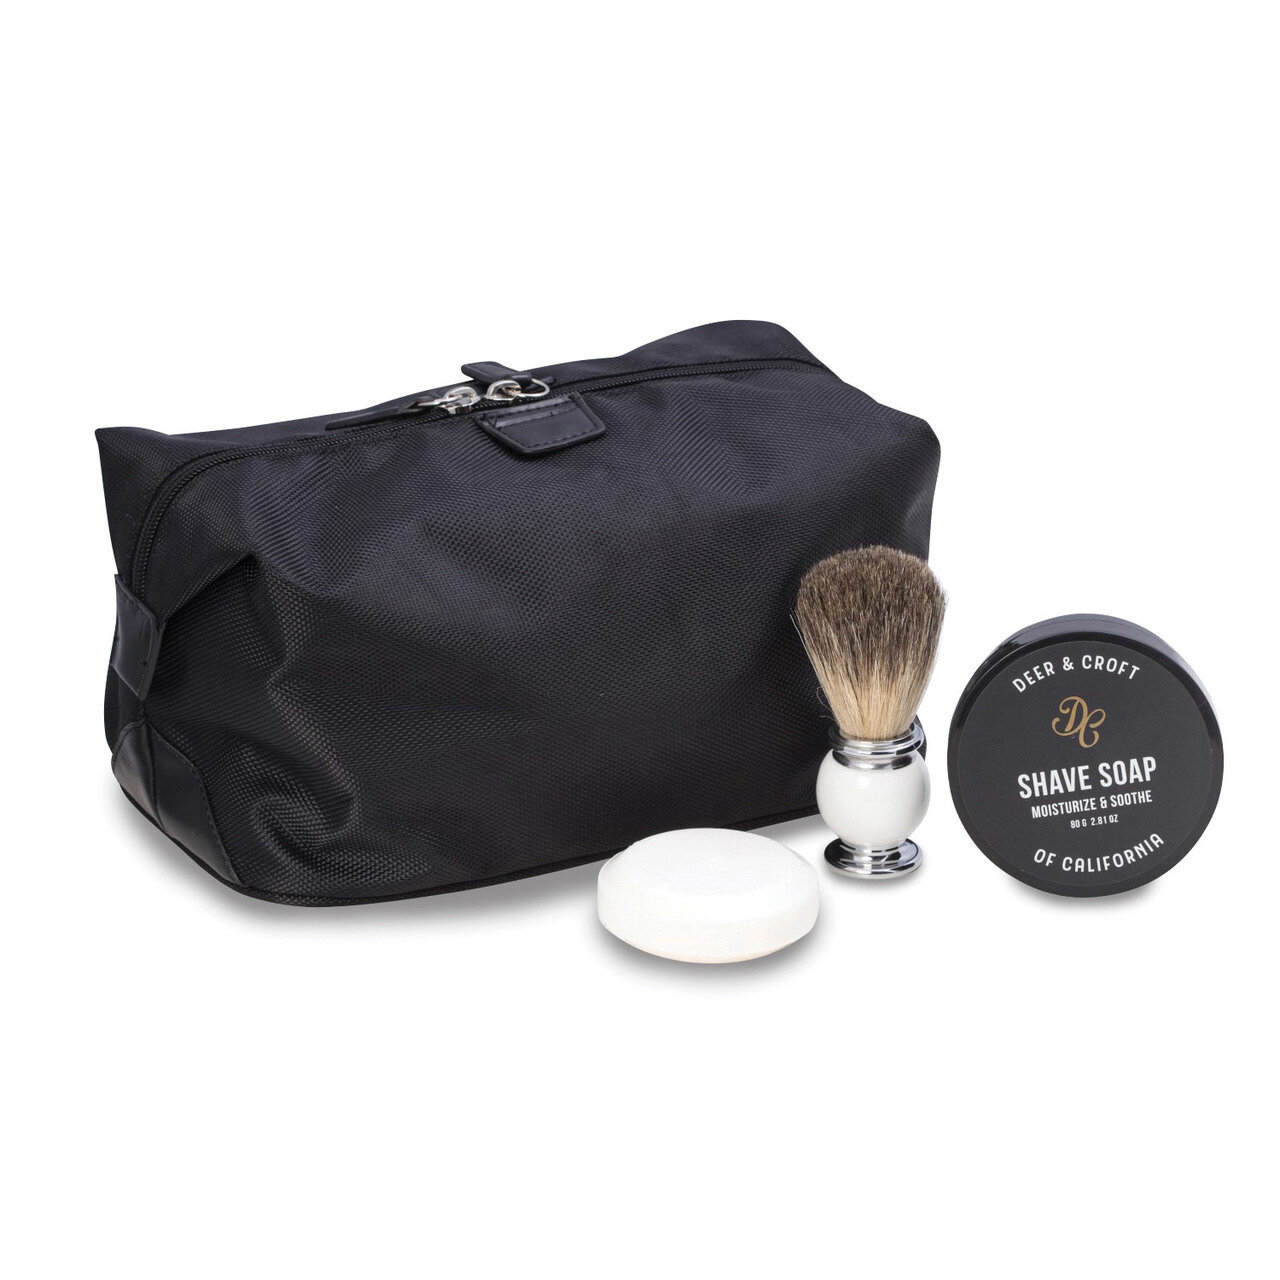 Deer & Croft Black Nylon Dopp Kit with Brush & Soap GM18337